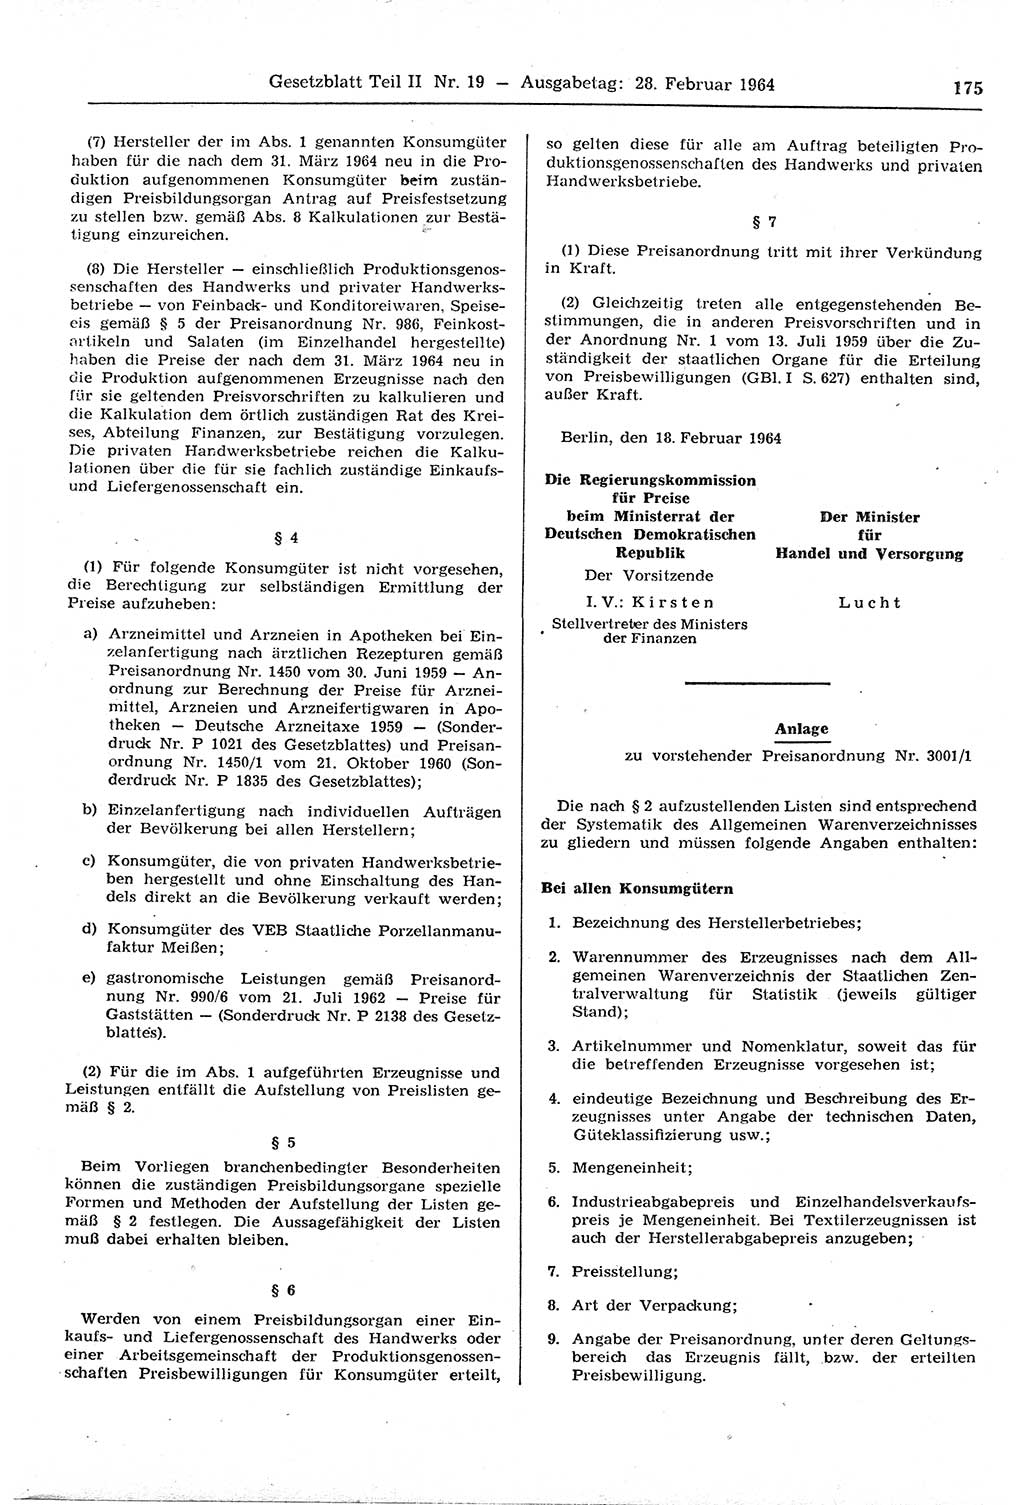 Gesetzblatt (GBl.) der Deutschen Demokratischen Republik (DDR) Teil ⅠⅠ 1964, Seite 175 (GBl. DDR ⅠⅠ 1964, S. 175)